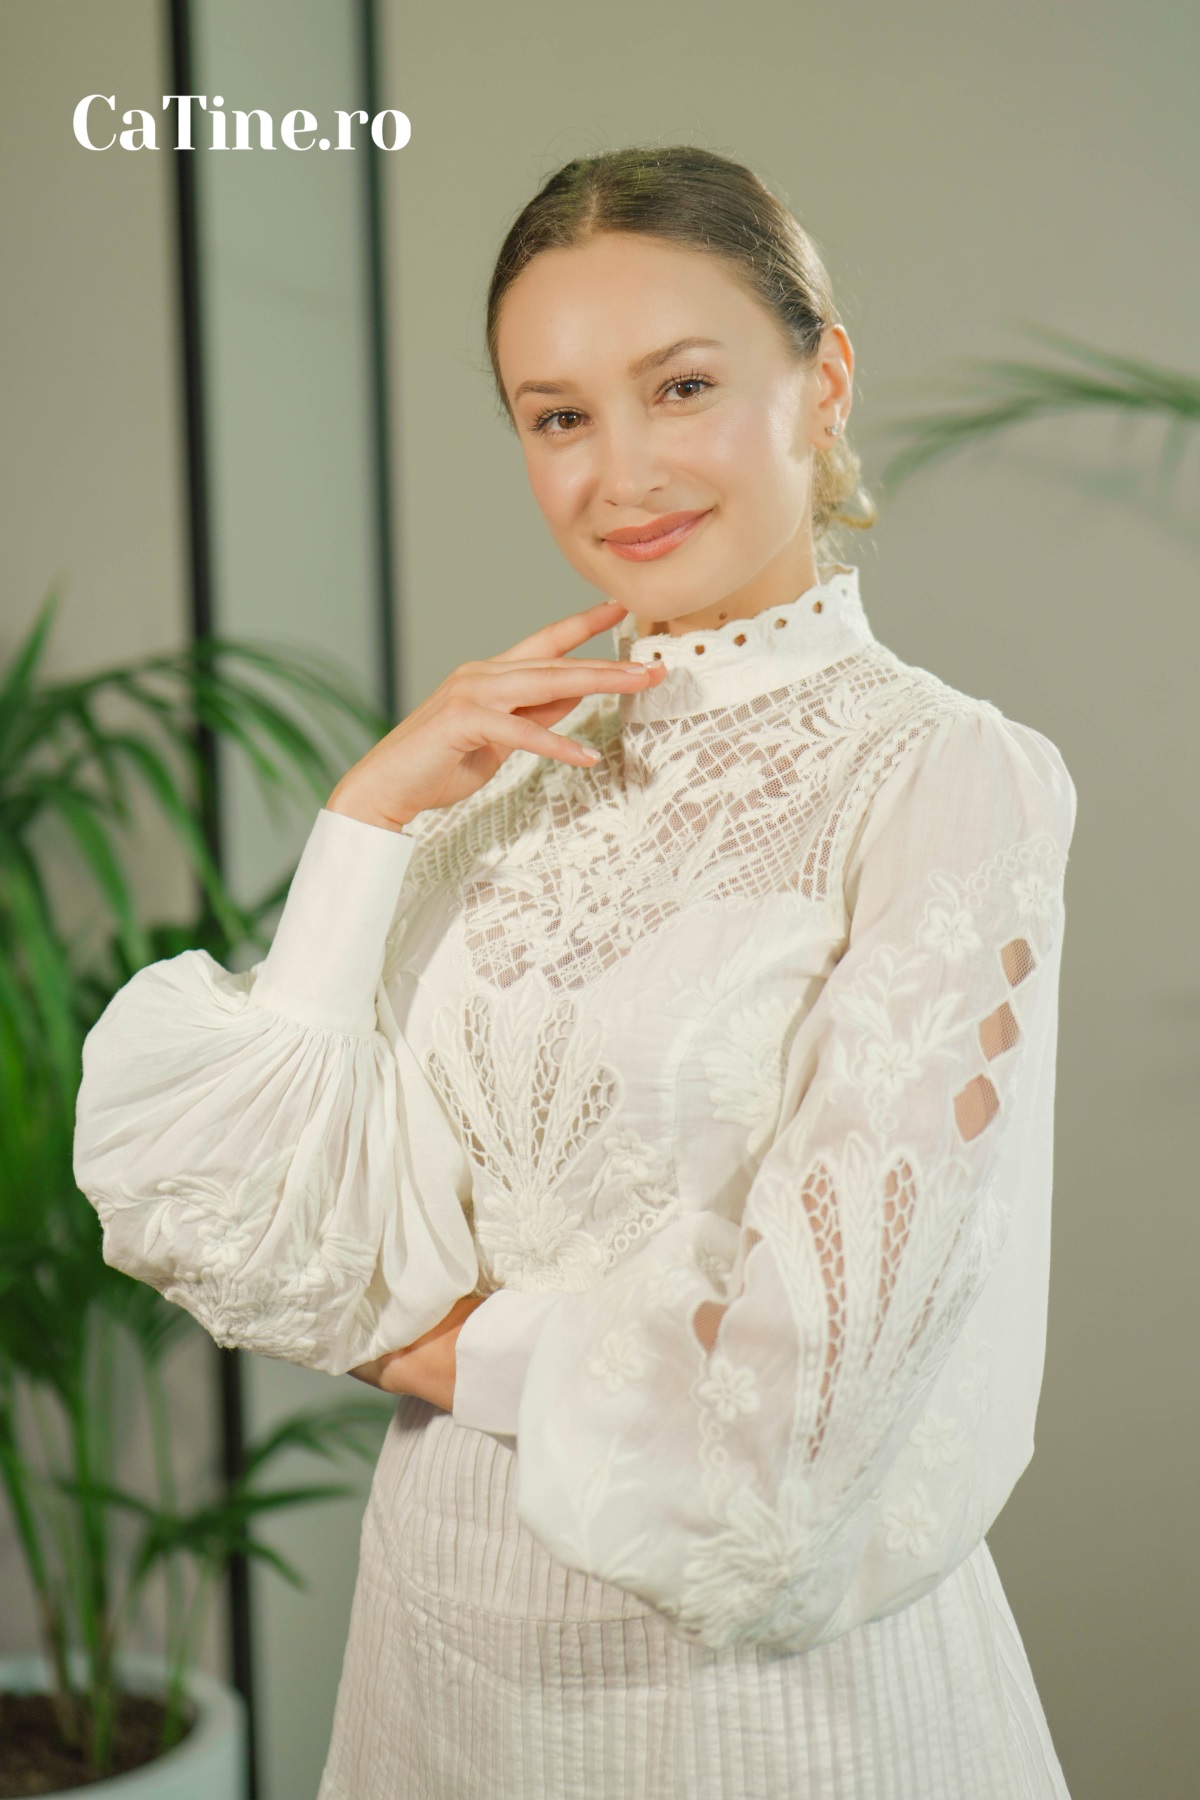 Florina Butean a pozat într-o rochie albă la interviul echipei CaTine